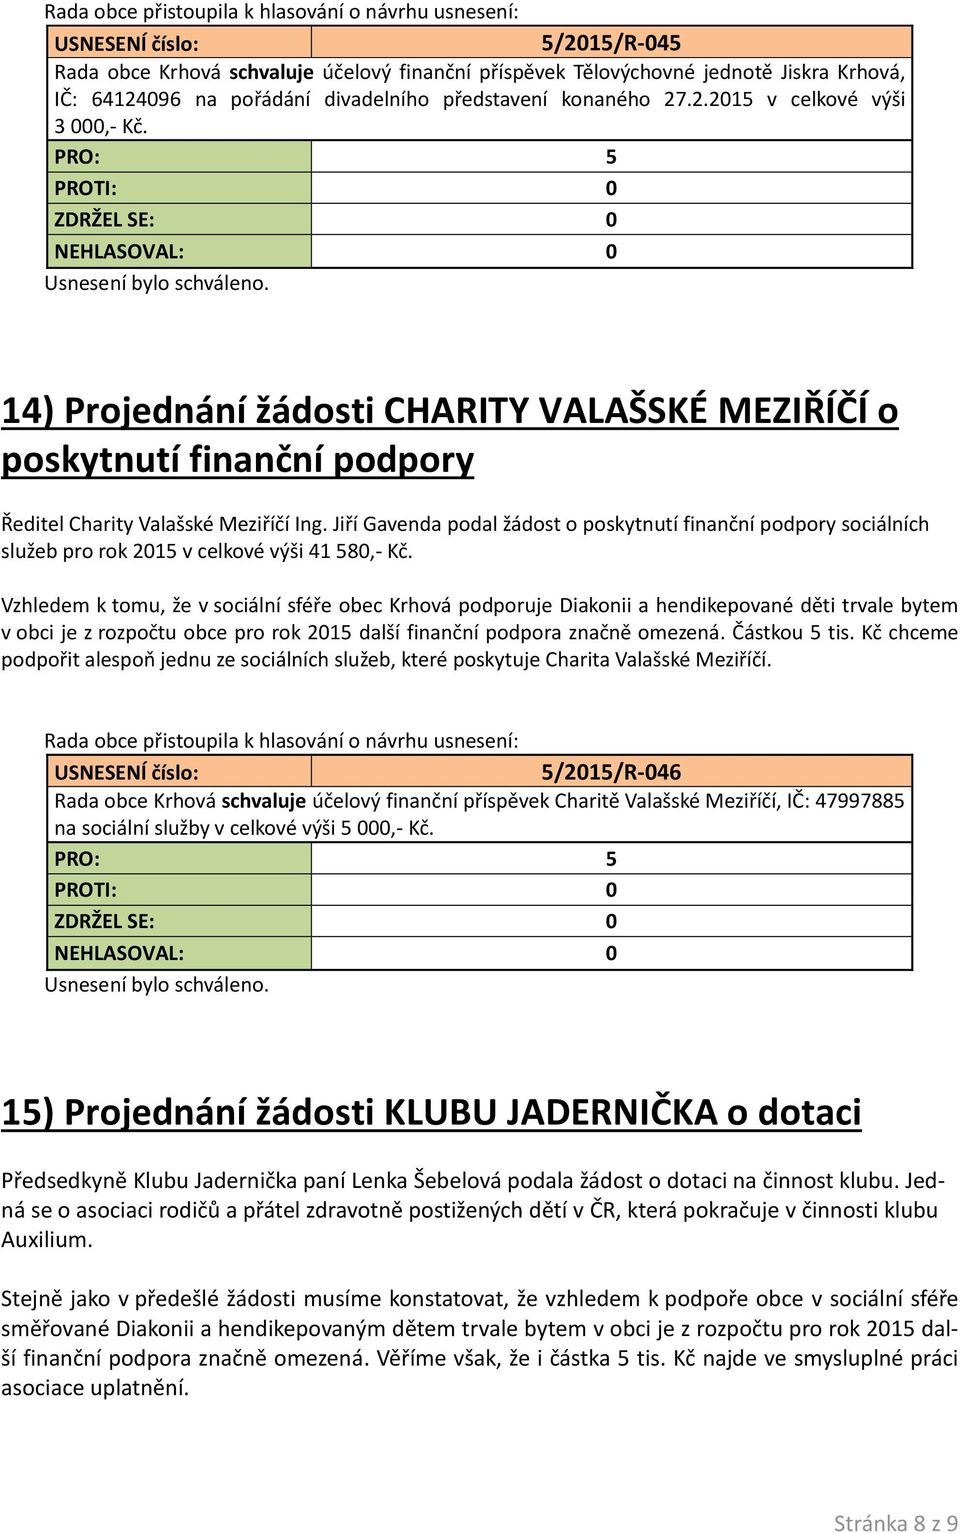 Jiří Gavenda podal žádost o poskytnutí finanční podpory sociálních služeb pro rok 2015 v celkové výši 41 580,- Kč.